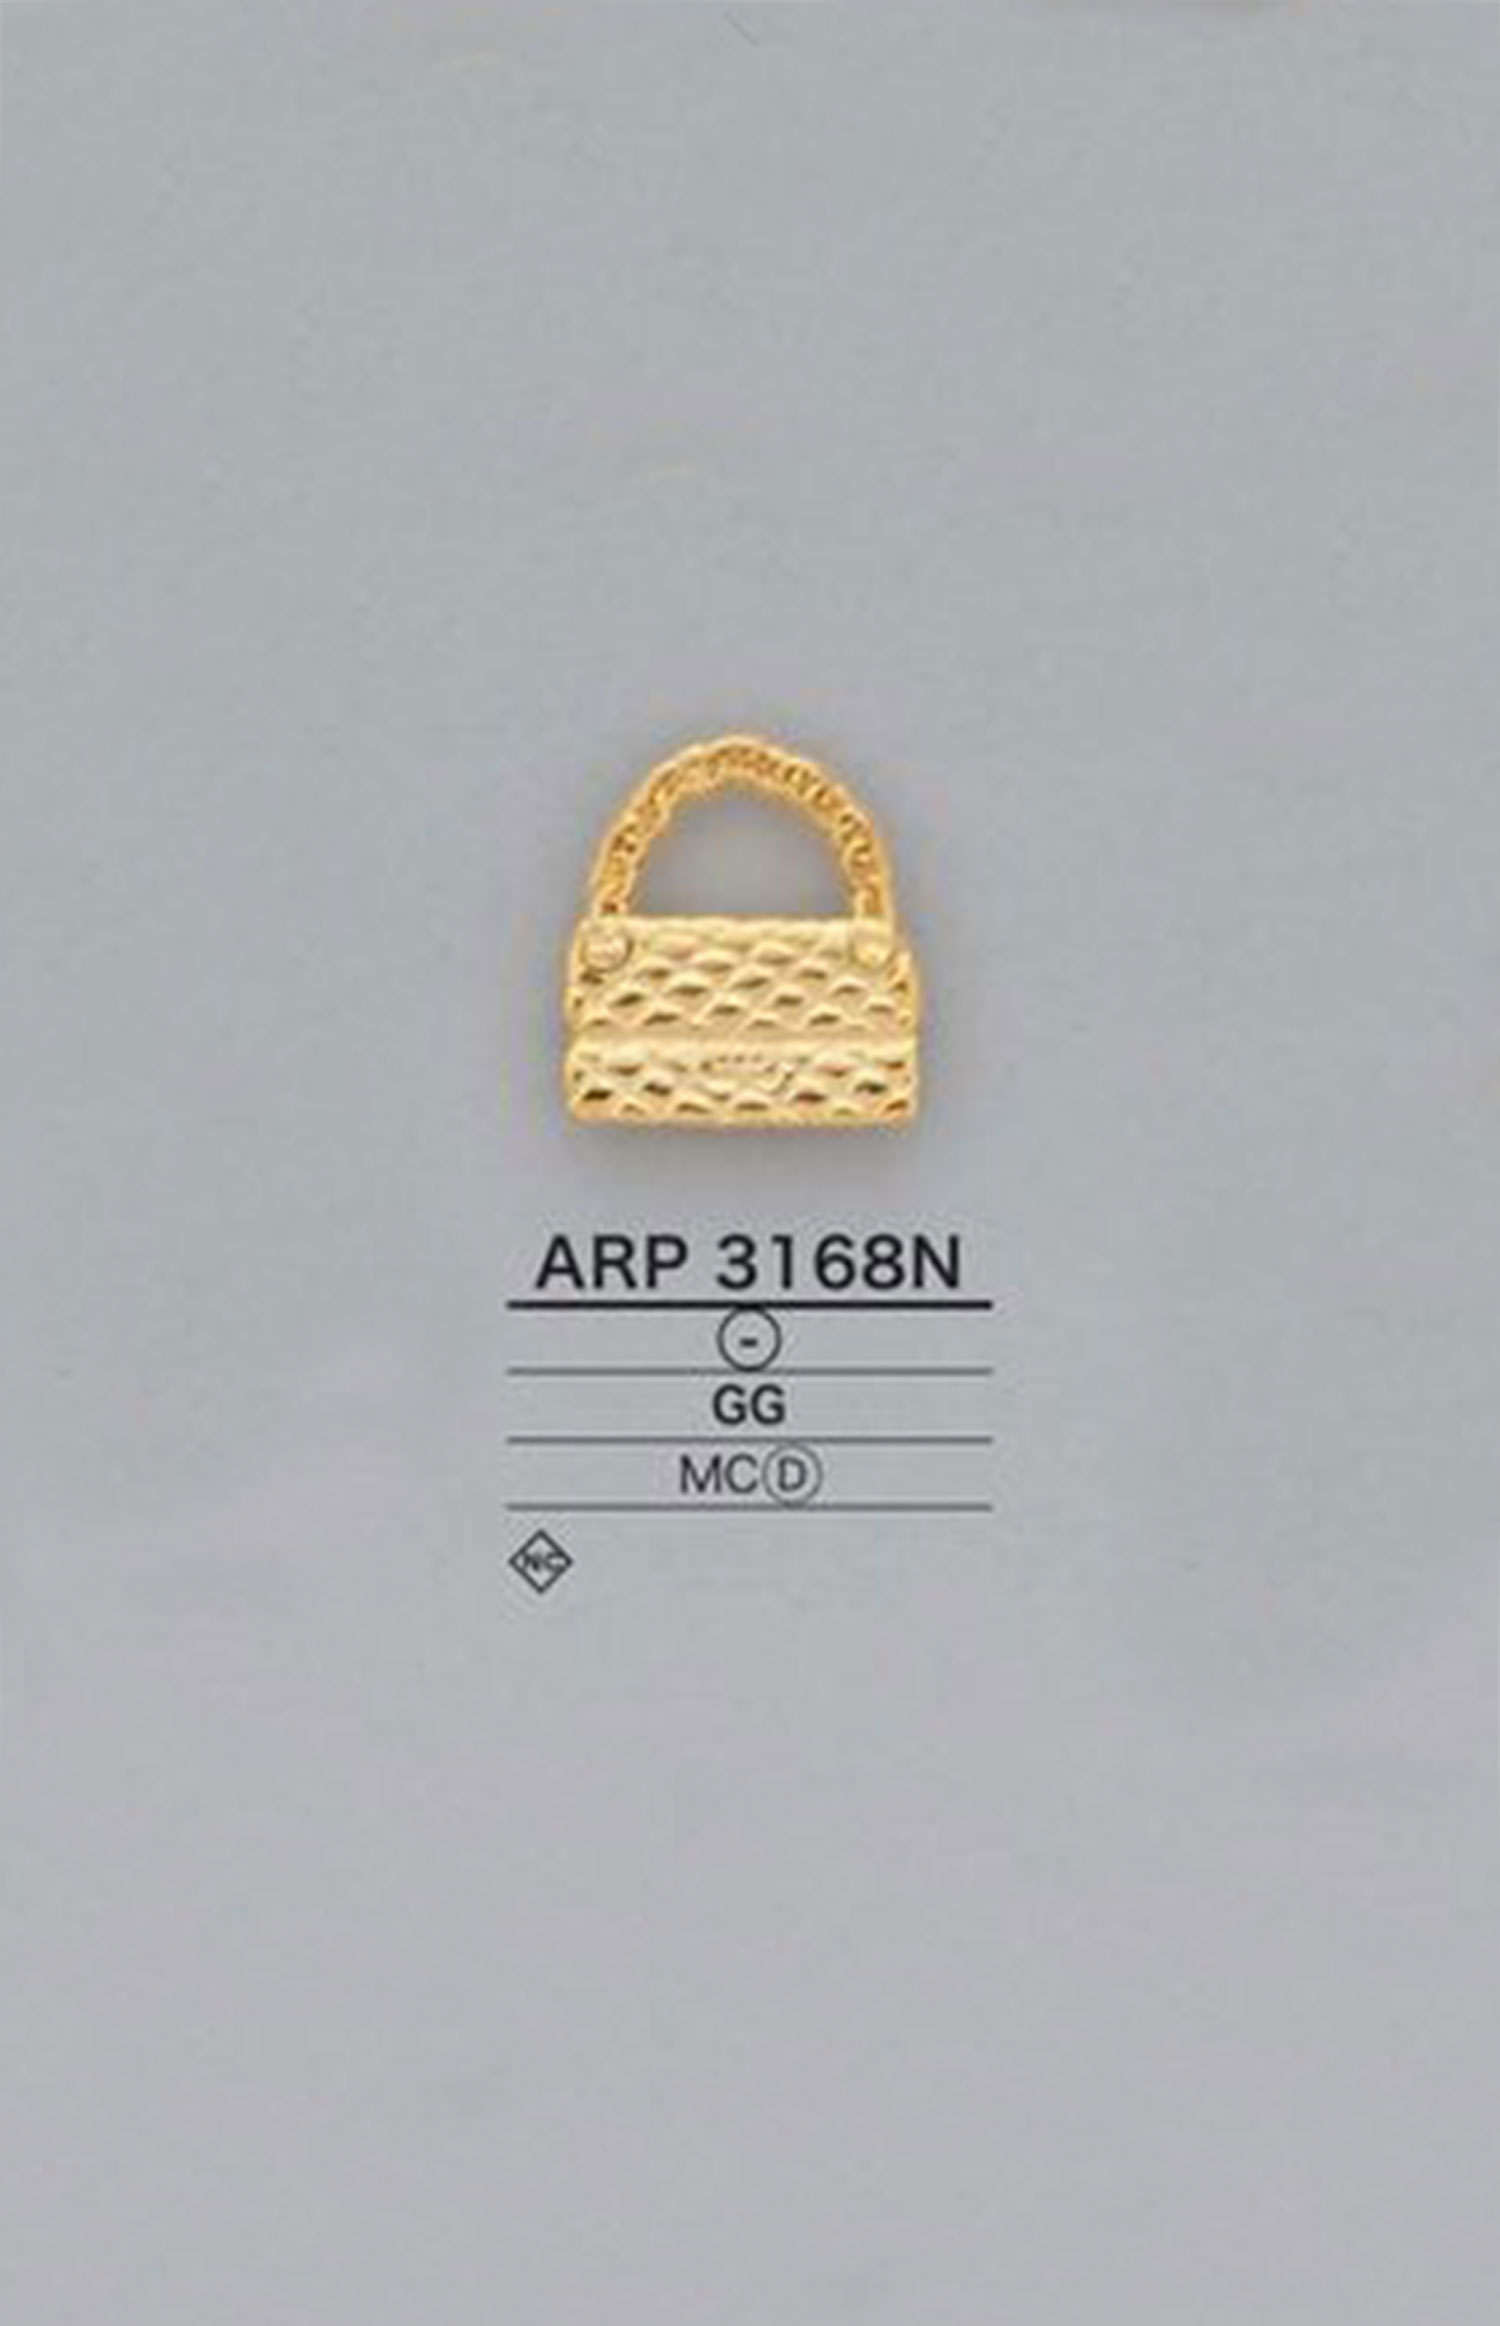 ARP3168N 箱包型圖形元素零件[雜貨等] 愛麗絲鈕扣